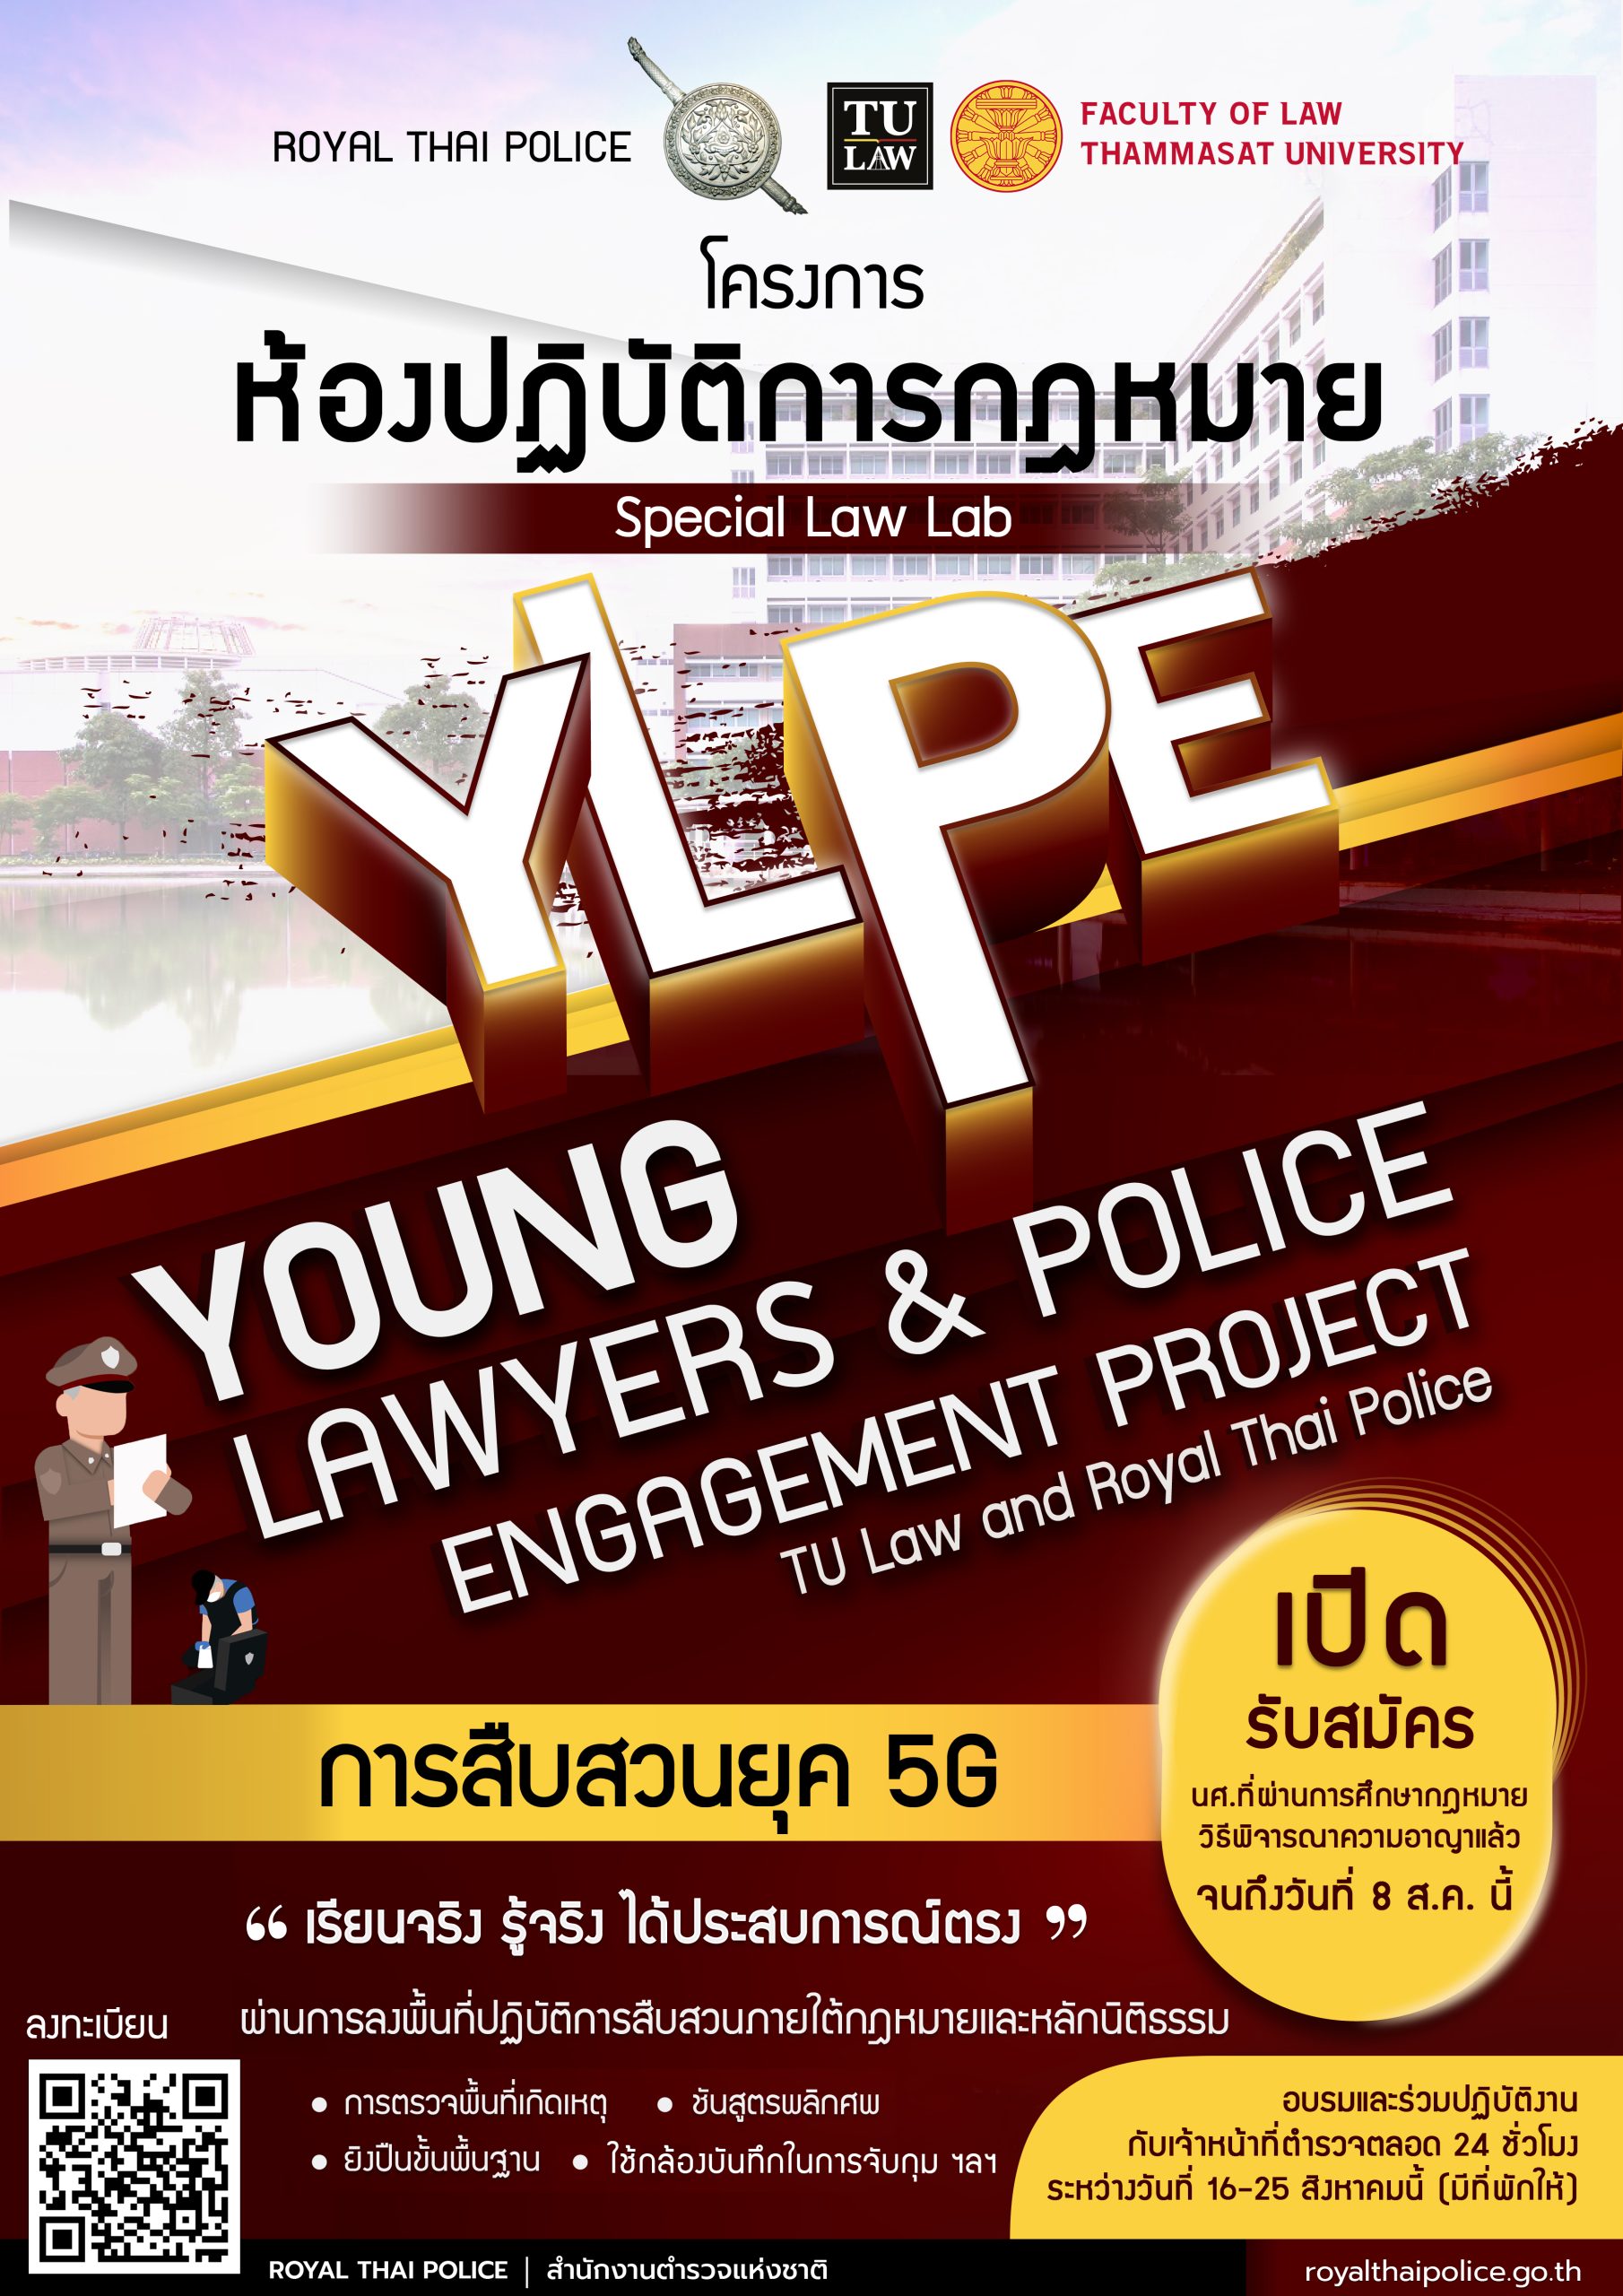 โครงการห้องปฏิบัติการกฎหมาย Young Lawyers & Police Engagement Project